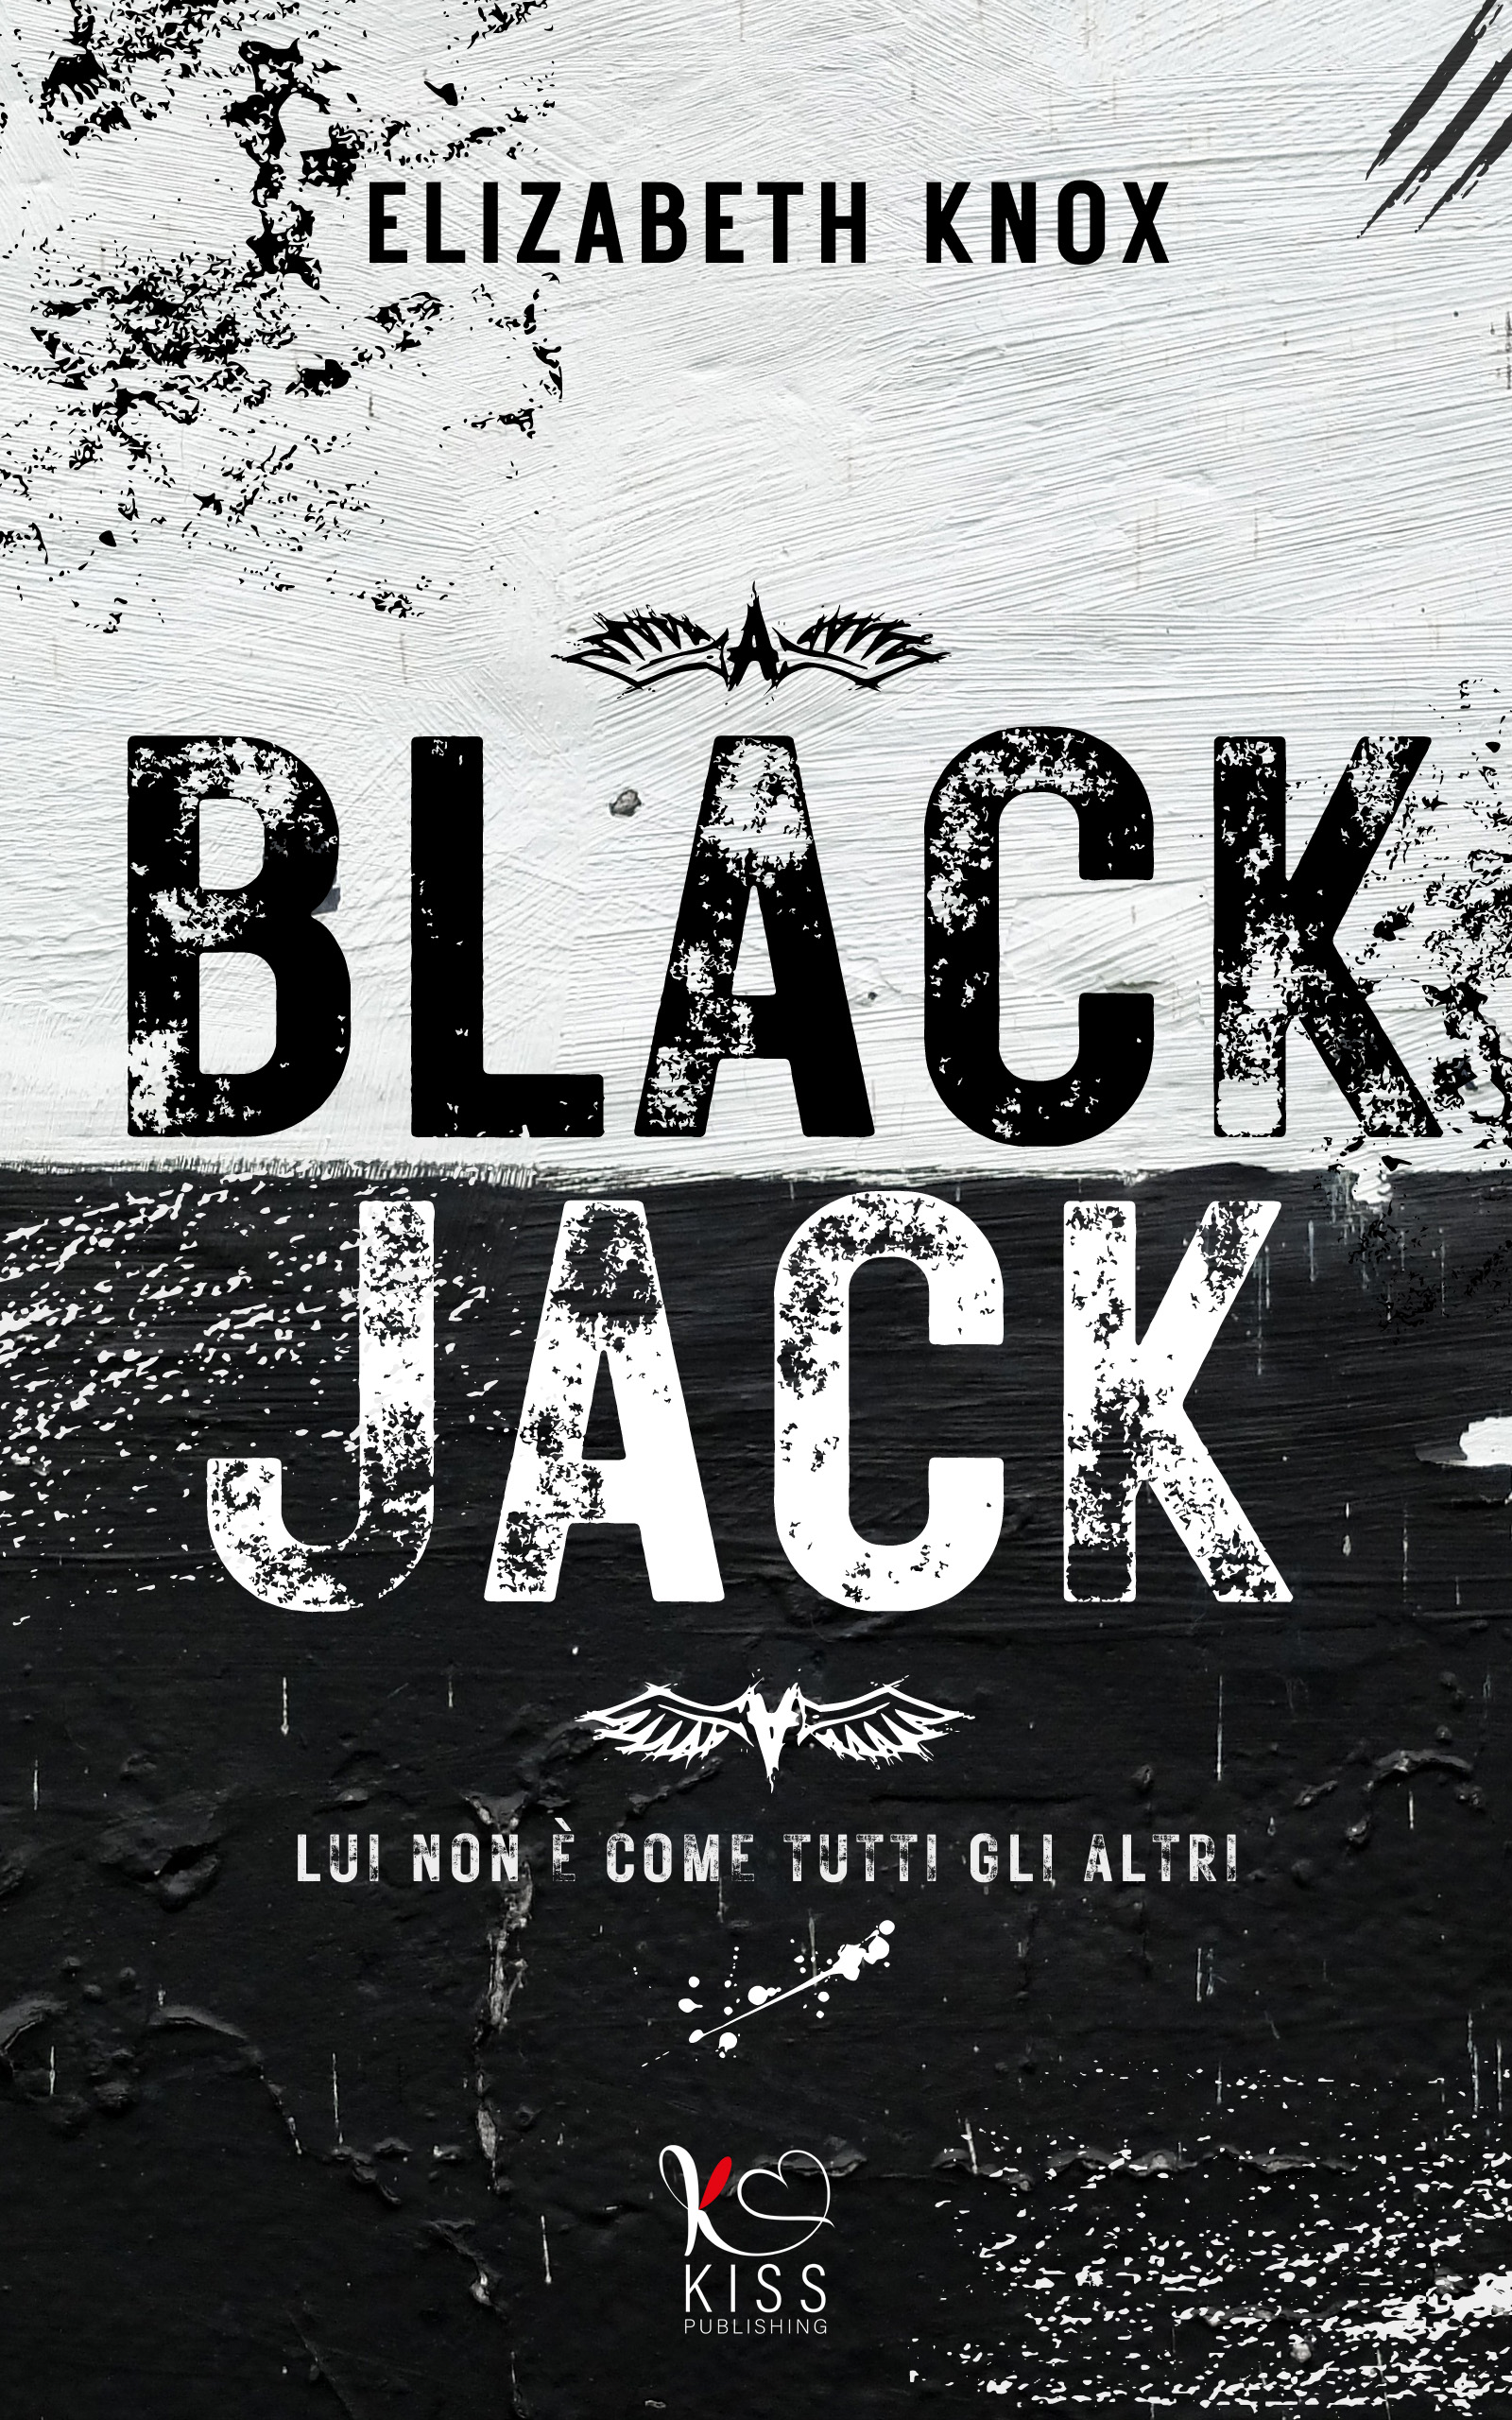 Cover Blackjack